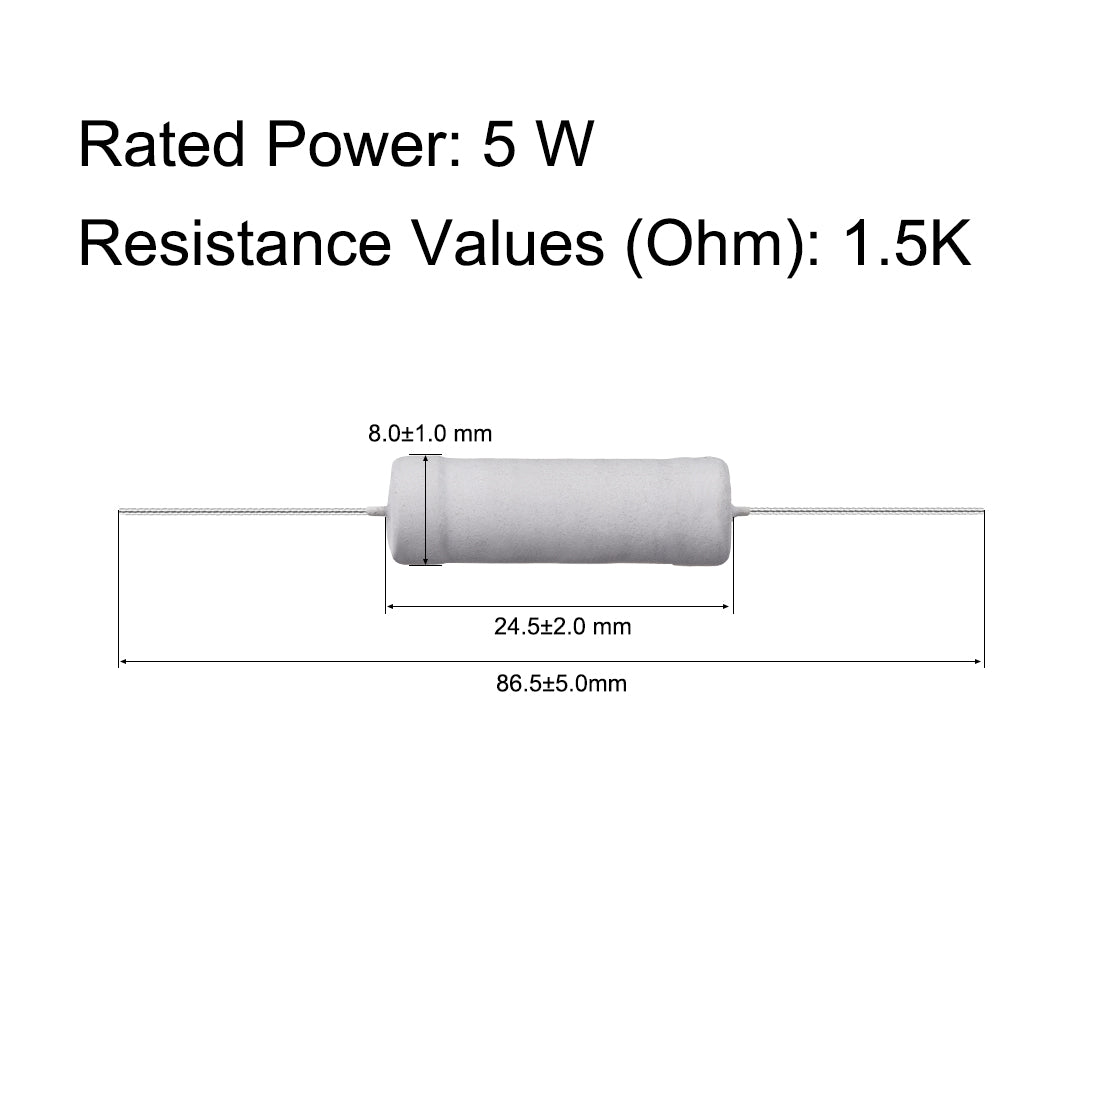 uxcell Uxcell 10 Pcs 5W 5 Watt Metal Oxide Film Resistor Axile Lead 1.5K Ohm ±5% Tolerance